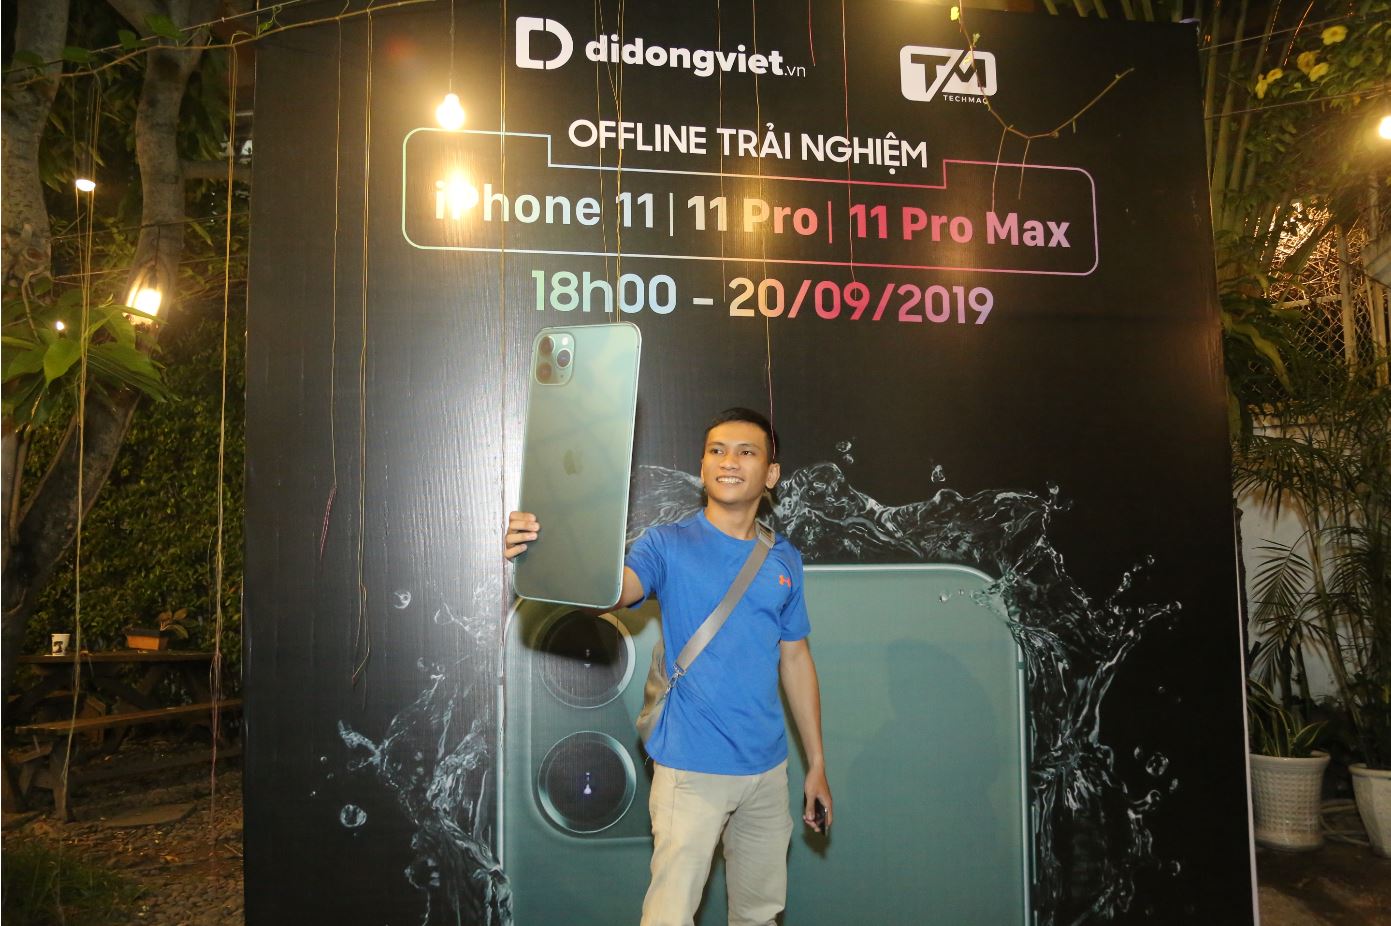 Người dùng Việt trải nghiệm trực tiếp những chiếc iPhone 11 đầu tiên cùng Di Động Việt